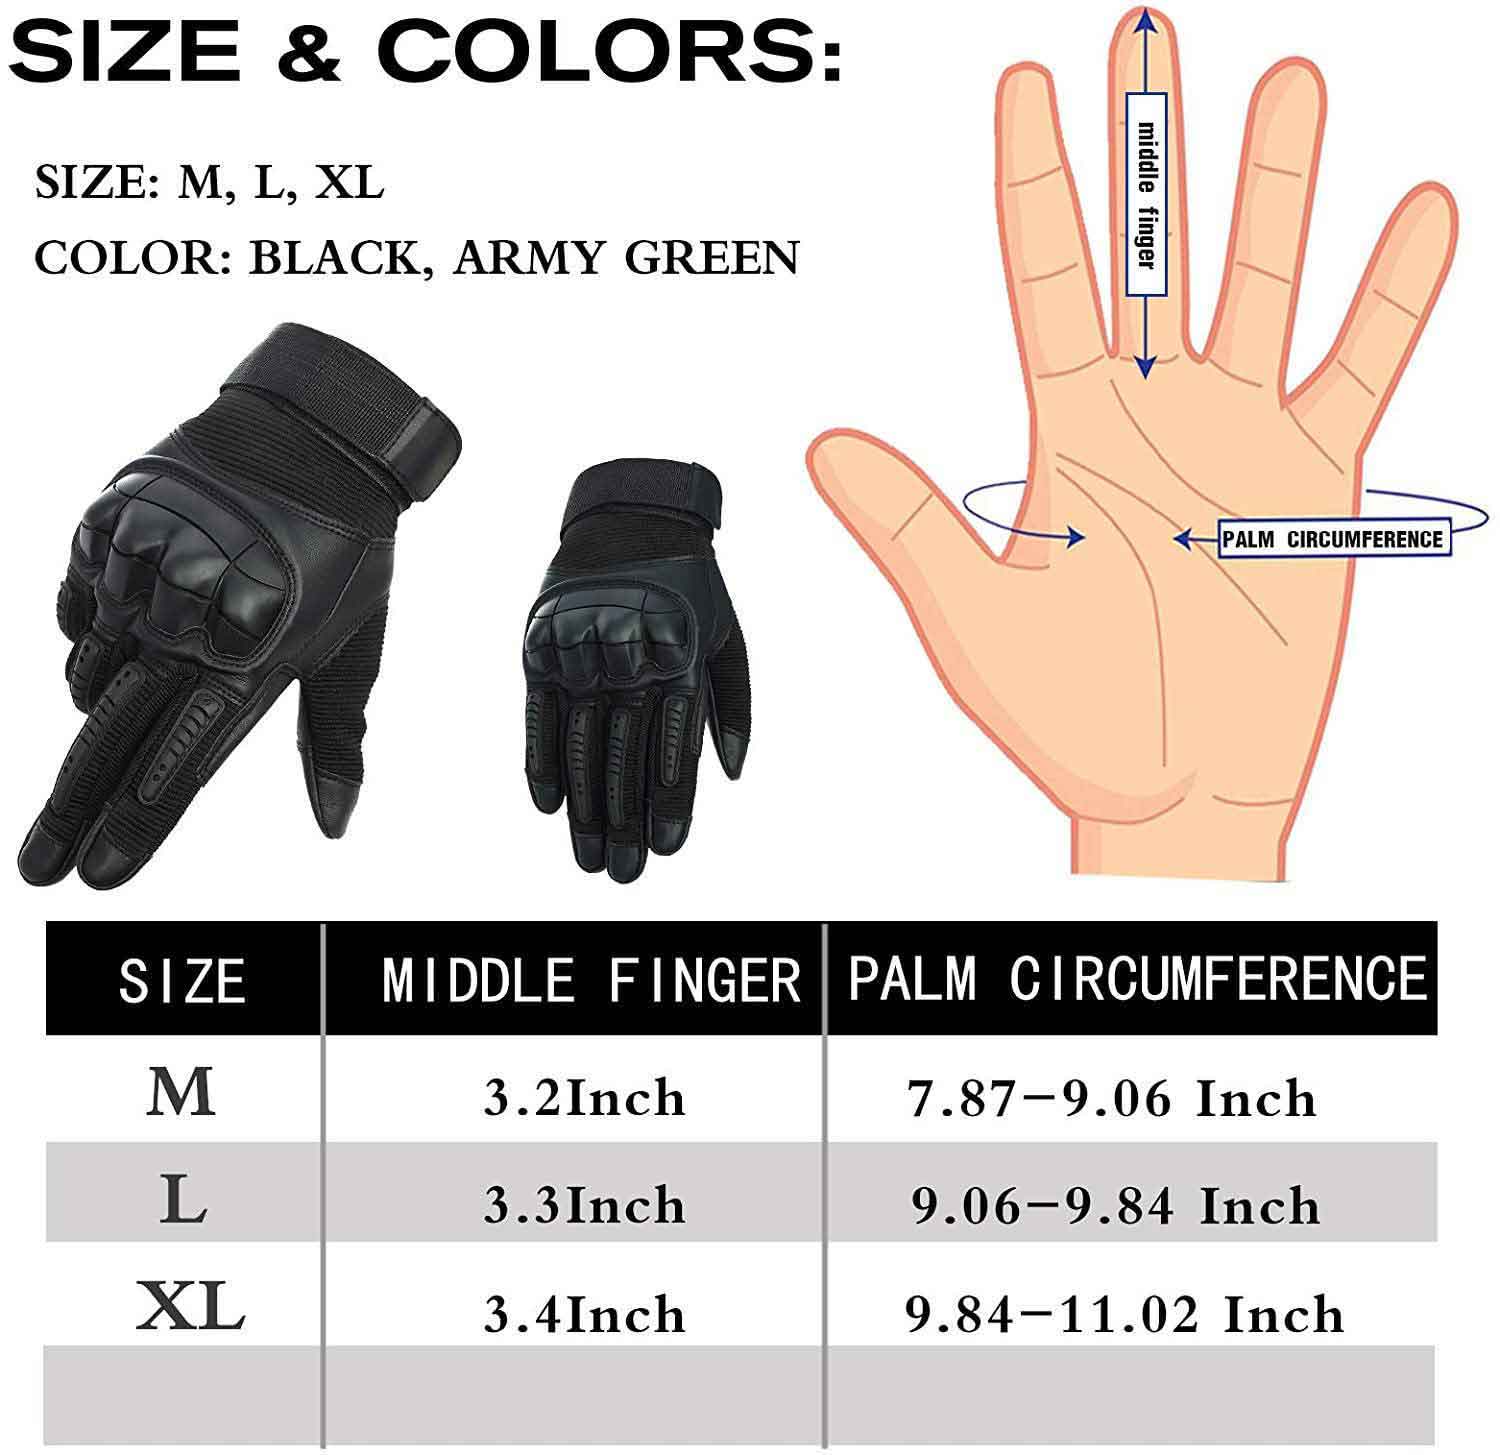 knuckle gloves | knuckle gloves amazon |  knuckle gloves boxing |  knuckle gloves for work |  knuckle gloves for arthritis |  knuckle gloves steel |  knuckle gloves uk |  knuckle gloves walmart |  knuckle glove purpose |  knuckle glove vs |  glove knuckle duster |  glove knuckle protector |  glove knuckle cover |  weighted-knuckle glove |  mr knuckle glove review |  knuckle protector gloves |  knuckle protection gloves |  what is a knuckle glove |  knuckle biker gloves |  knuckle buster gloves |  punk knuckle gloves (black) pubg |  fingerless knuckle gloves black |  bare knuckle boxing glove |  brass knuckle glove |  brass knuckle glove company |  knuckle compression gloves |  knuckles costume gloves |  hard knuckle gloves canada |  weighted knuckle gloves canada |  hard knuckle gloves california |  hard knuckle gloves ebay |  knuckle gloves fashion |  knuckles gloves for heavy bag |  knuckle for gloves |  knuckles fighting gloves |  knuckles finger gloves |  hard knuckle gloves for punching |  knuckle guard gloves |  knucklehead gloves |  hard knuckle glove |  hockey knuckle glove |  homemade knuckle glove |  gloves with hard knuckles |  jiusy knuckle gloves |  gloves reinforced knuckles |  knuckle tactical gloves |  leather knuckle gloves |  metal knuckle gloves |  mr knuckle gloves |  mr knuckle gloves review |  mr knuckle gloves amazon |  mr knuckle gloves australia |  mr knuckle gloves uk |  mr knuckle arthritis gloves |  mr knuckle compression gloves amazon |  hard knuckle gloves near me |  knuckle out gloves |  hard knuckle gloves oakley |  knuckle protection glove |  knuckle plated gloves |  knuckle padded gloves |  knuckle protection gloves for boxing |  knuckles plush gloves |  hard knuckle gloves punch |  knuckle gloves reddit |  dragon knuckle gloves review |  hard knuckle gloves review |  first tactical hard knuckle glove review |  punk knuckle gloves (red) |  knuckle tattoo gloves |  knuckle touchscreen gloves |  hard knuckle tactical glove |  hwi hard knuckle tactical glove |  titanium knuckle glove |  hard knuckle gloves uk |  weighted knuckle gloves uk |  knuckle duster gloves uk |  knuckle gloves weapons |  knuckle weighted gloves |  knuckles without gloves |  glove with knuckle protection |  glove with knuckle guard |  wiley x hard knuckle gloves | 